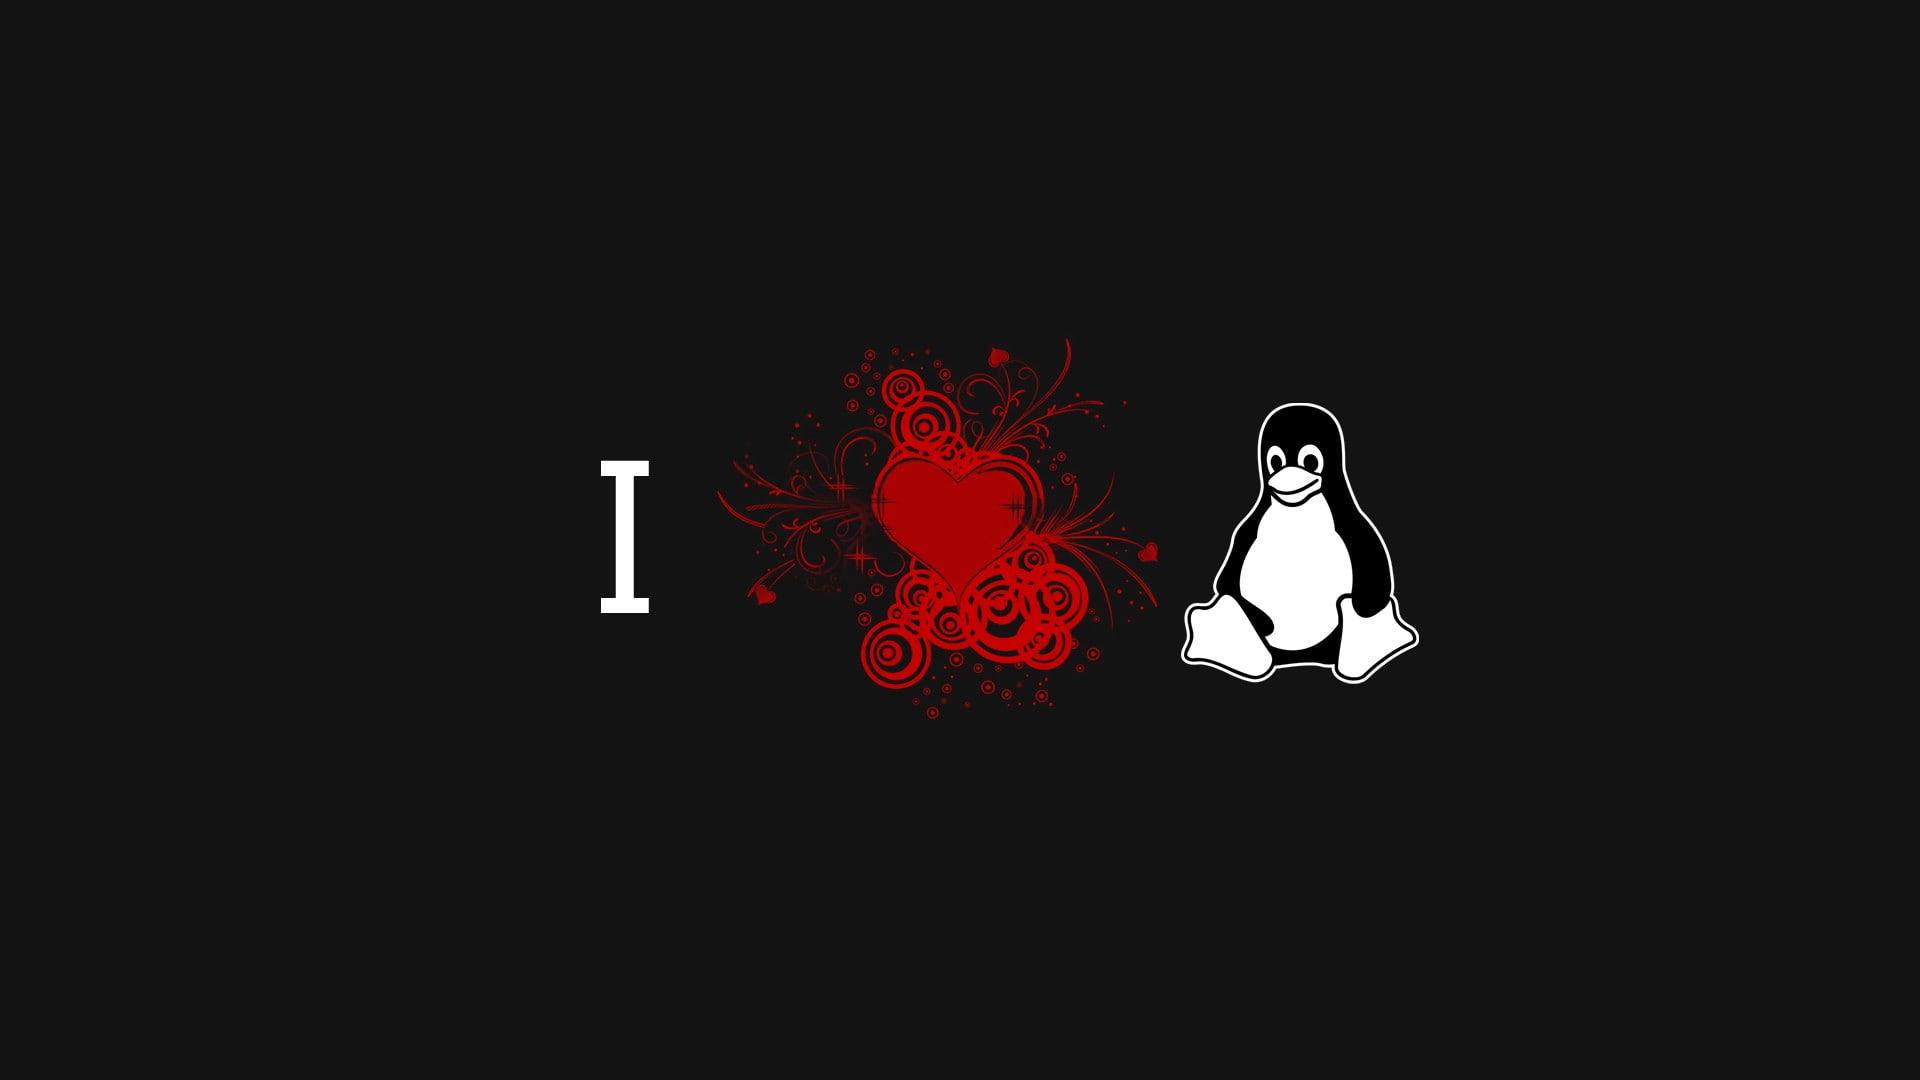 tux, linux, computer, ubuntu, penguin, lighting equipment, illuminated